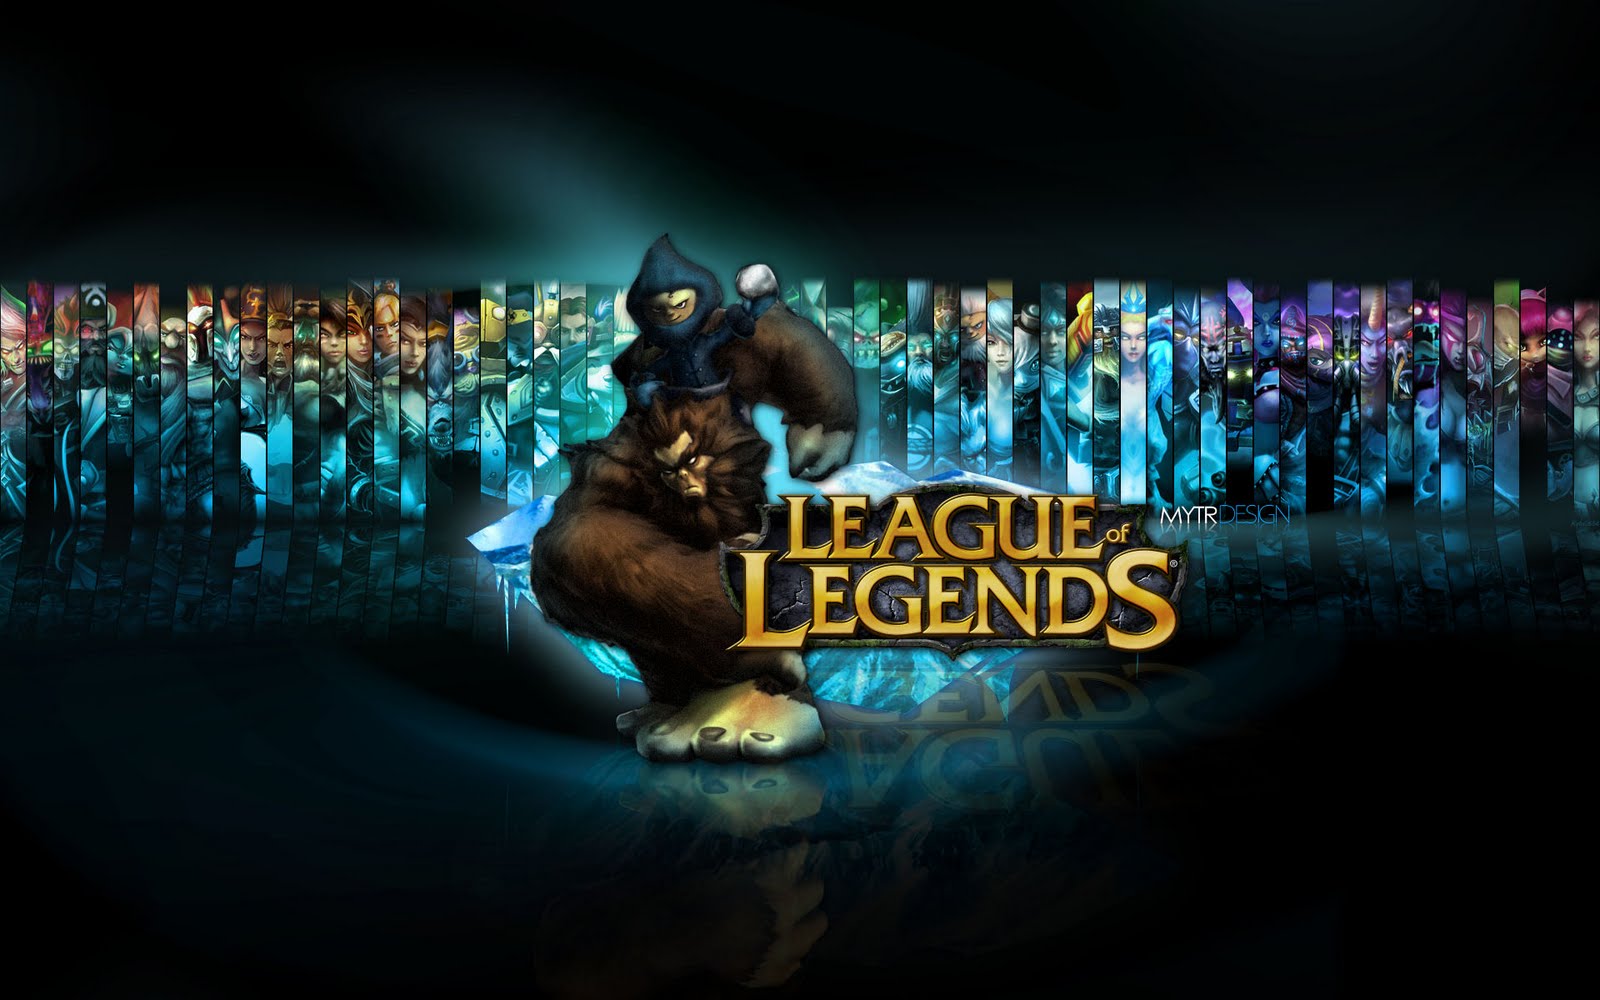 liga de leyendas campeones fondo de pantalla,texto,ligero,oscuridad,diseño gráfico,fuente